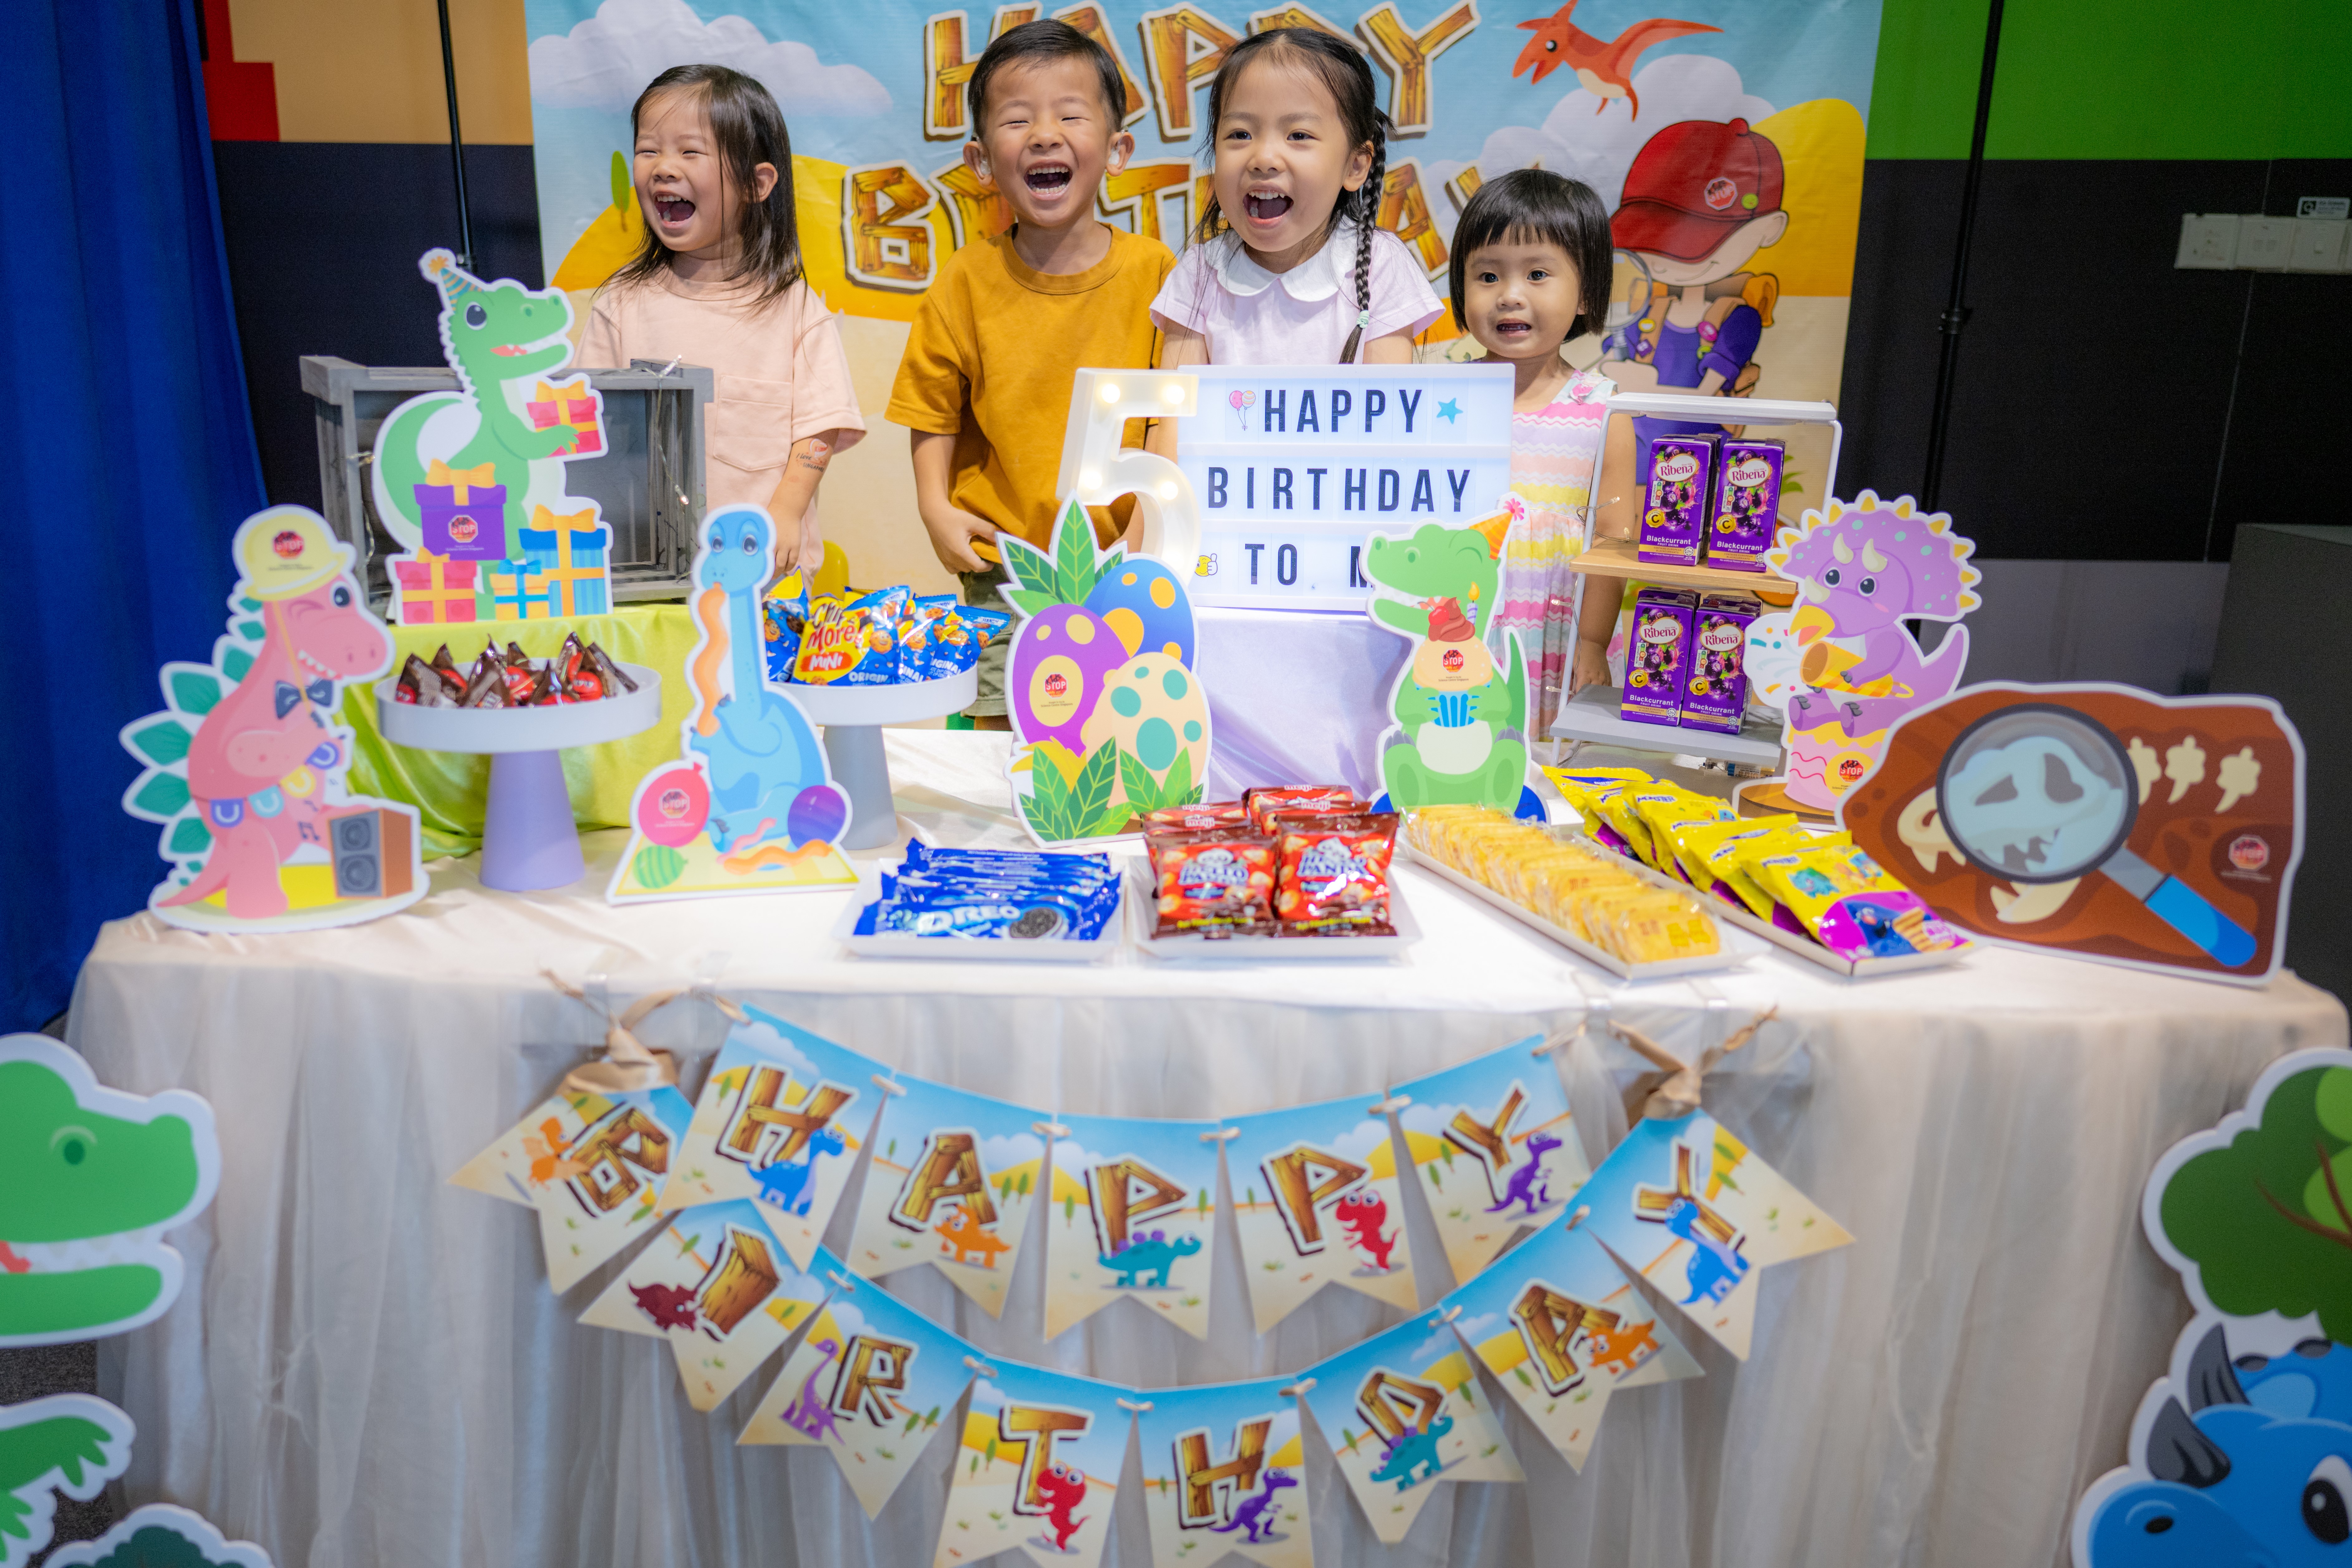 KidsSTOP celebration birthday party